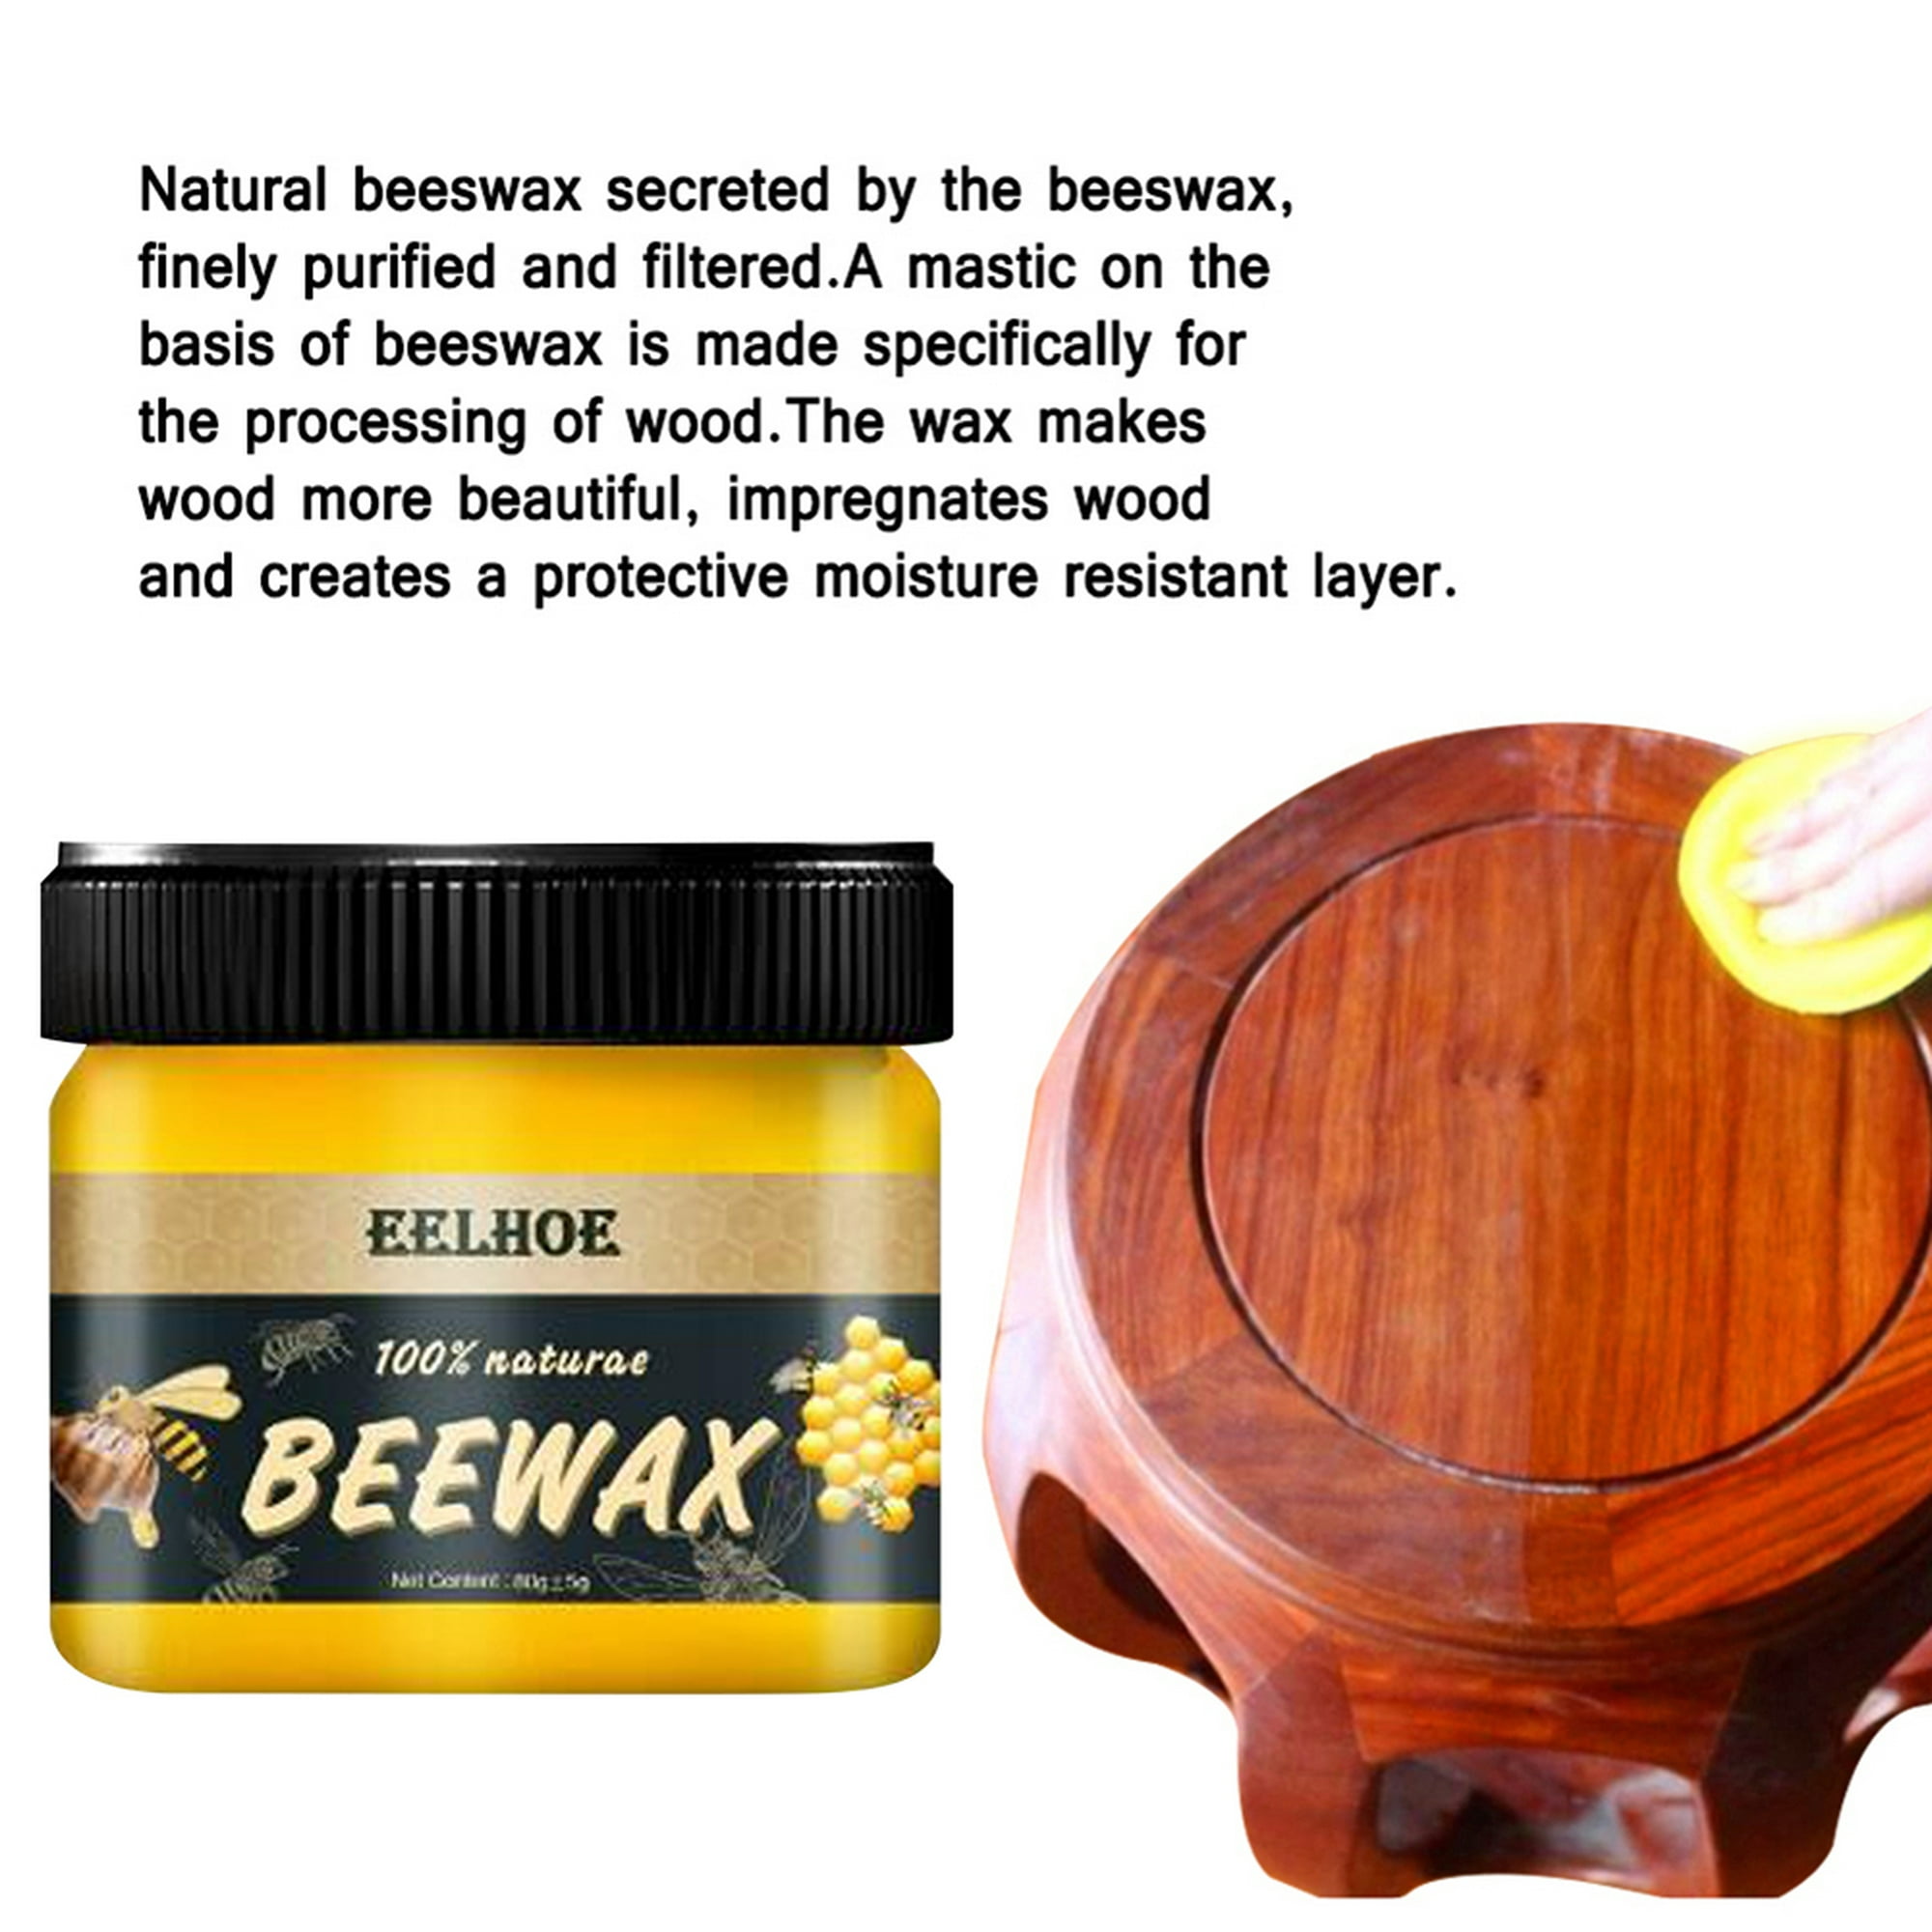 80g Beewax polaco crema miel cera jabón proteger muebles de madera